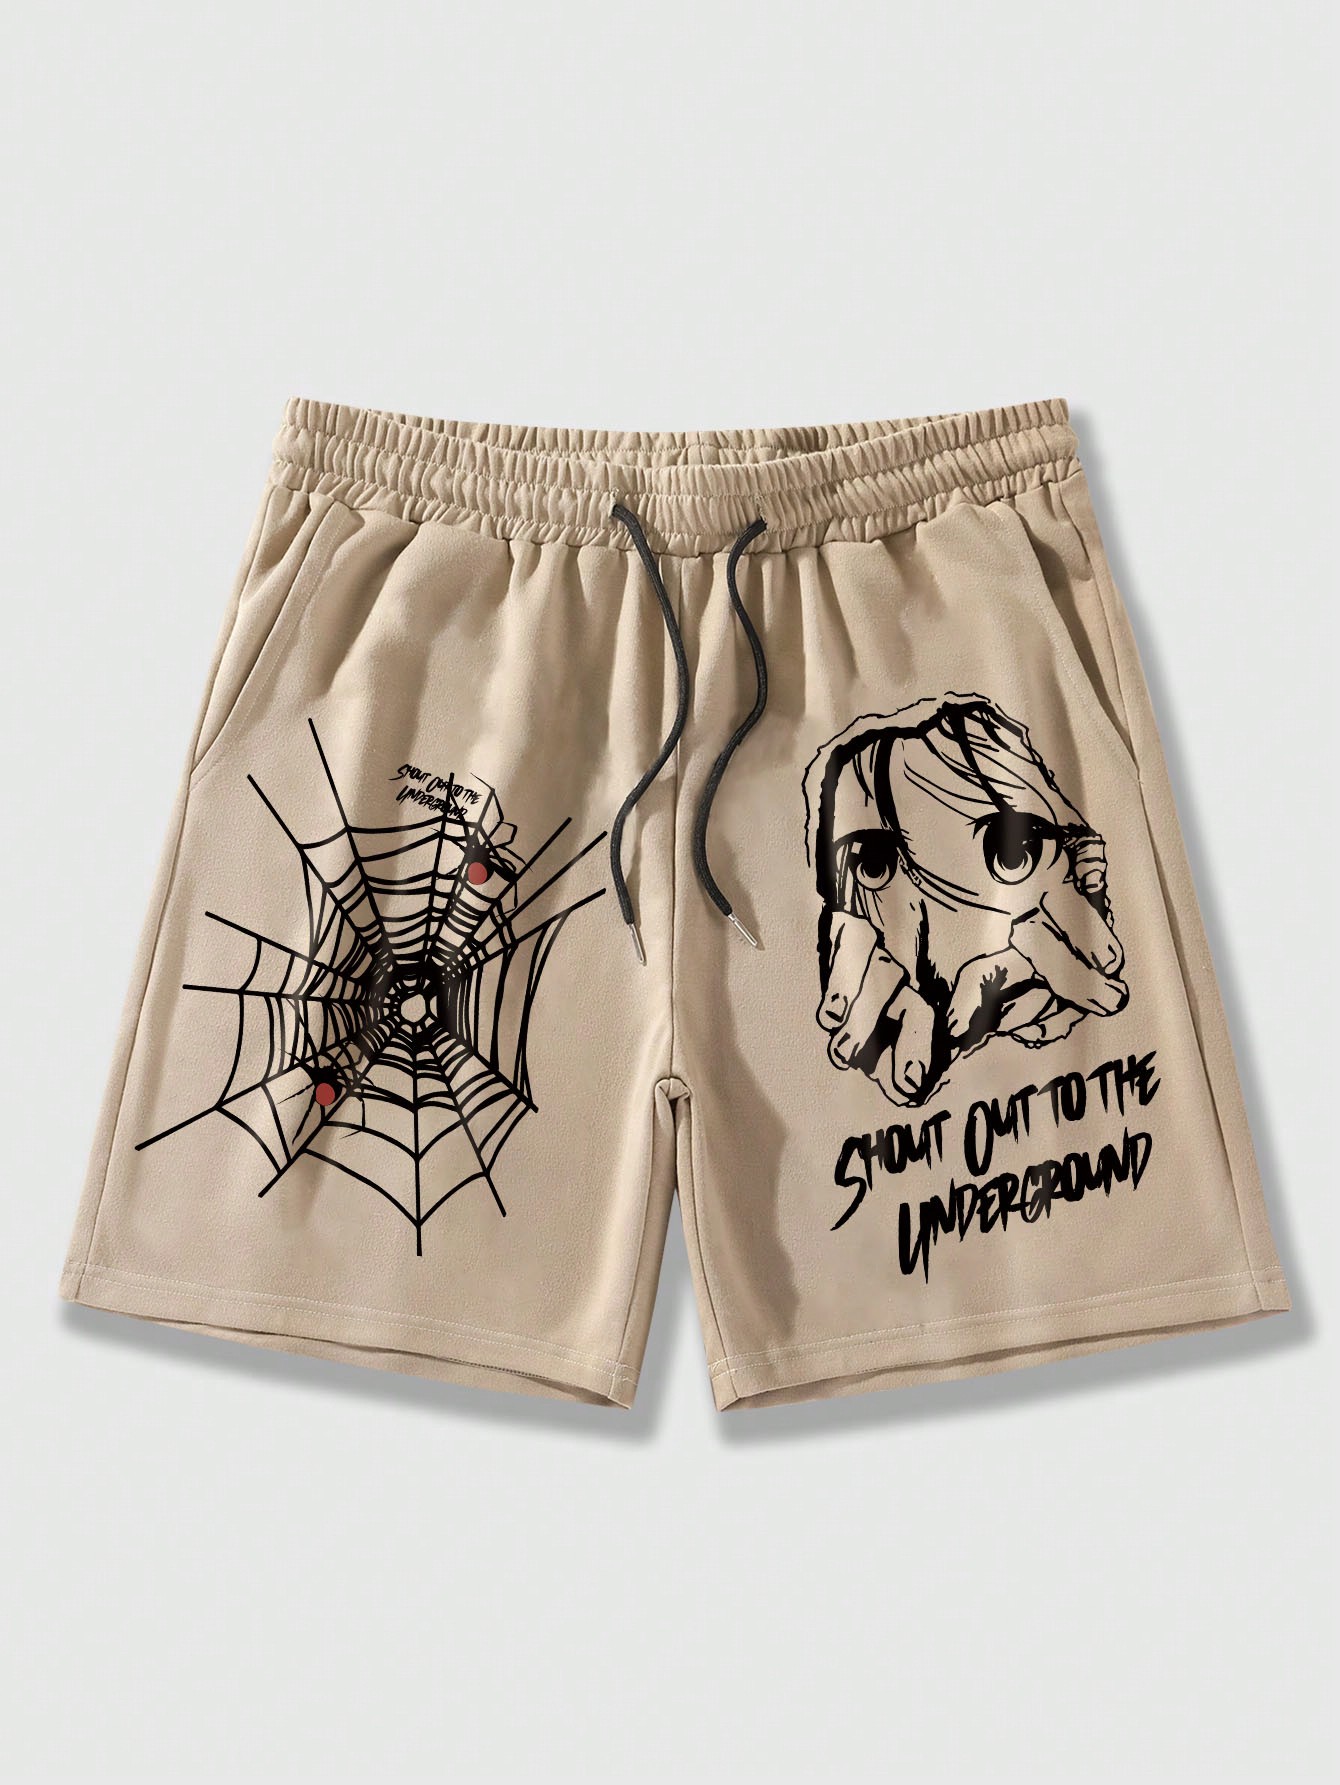 Мужские шорты ROMWE Academia с рисунком паутины и буквенным принтом на завязке на талии, хаки